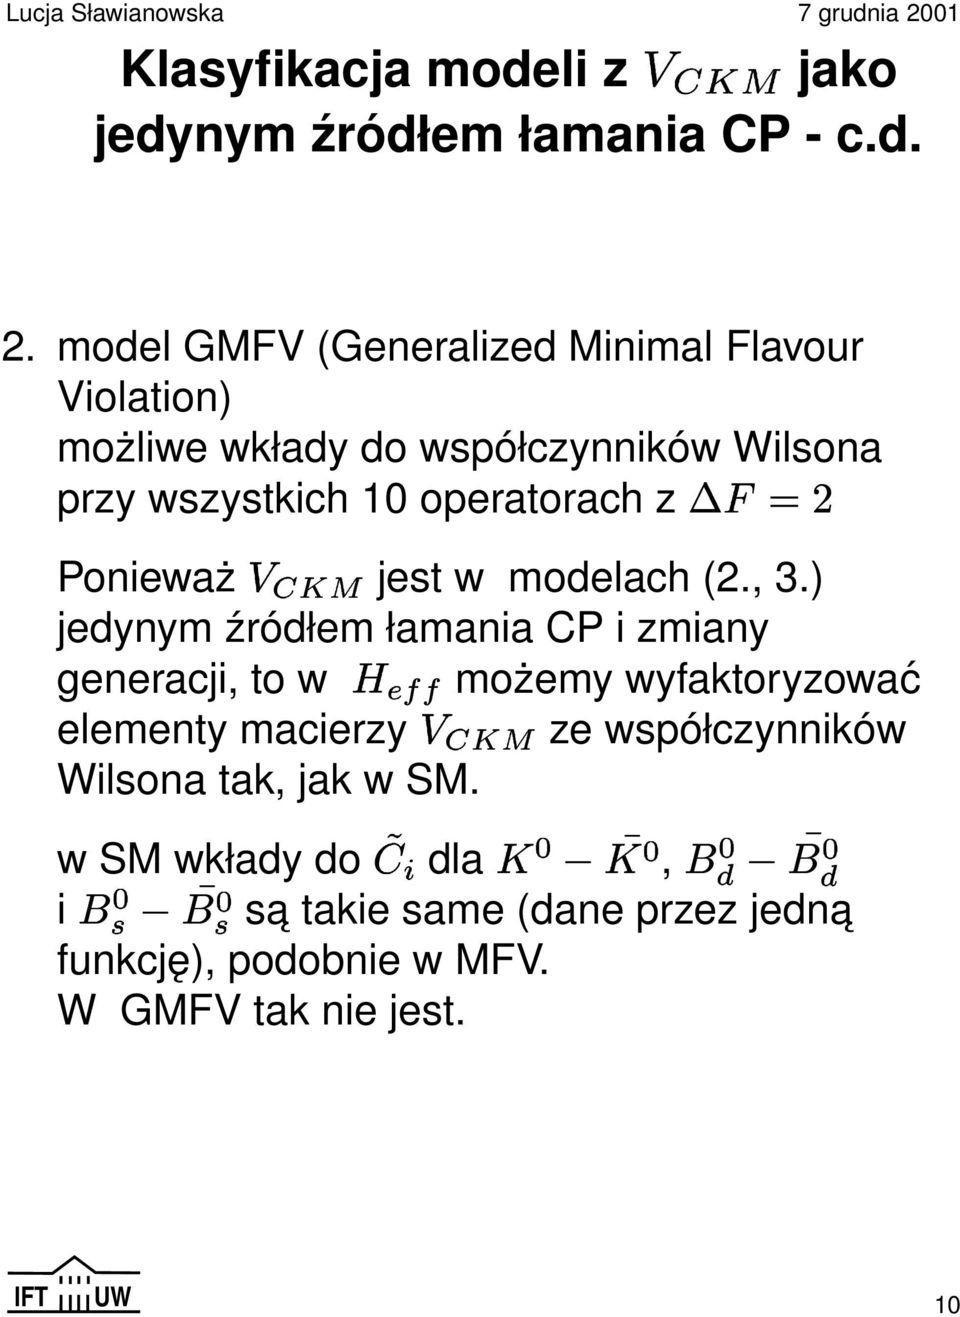 model GMFV (Generalized Minimal Flavour Violation) możliwe wkłady do współczynników Wilsona przy wszystkich 10 operatorach z